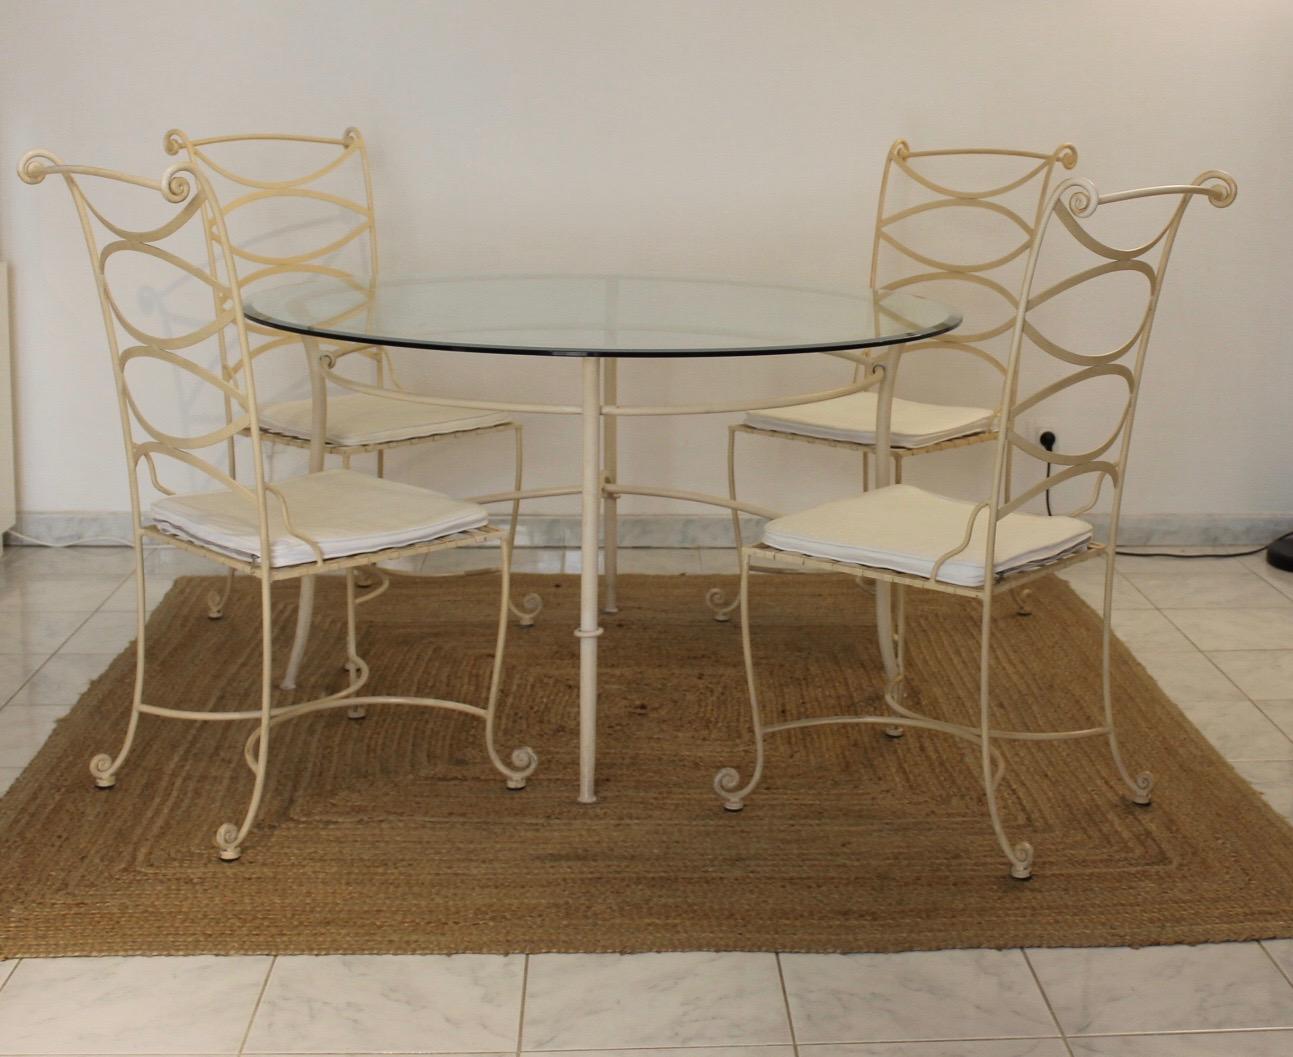 Table à manger avec 4 chaises assorties en fer forgé.
Couleur ivoire. Peut convenir à l'intérieur d'une pièce ou à l'extérieur.
Travail français des années 80 de bonne qualité.